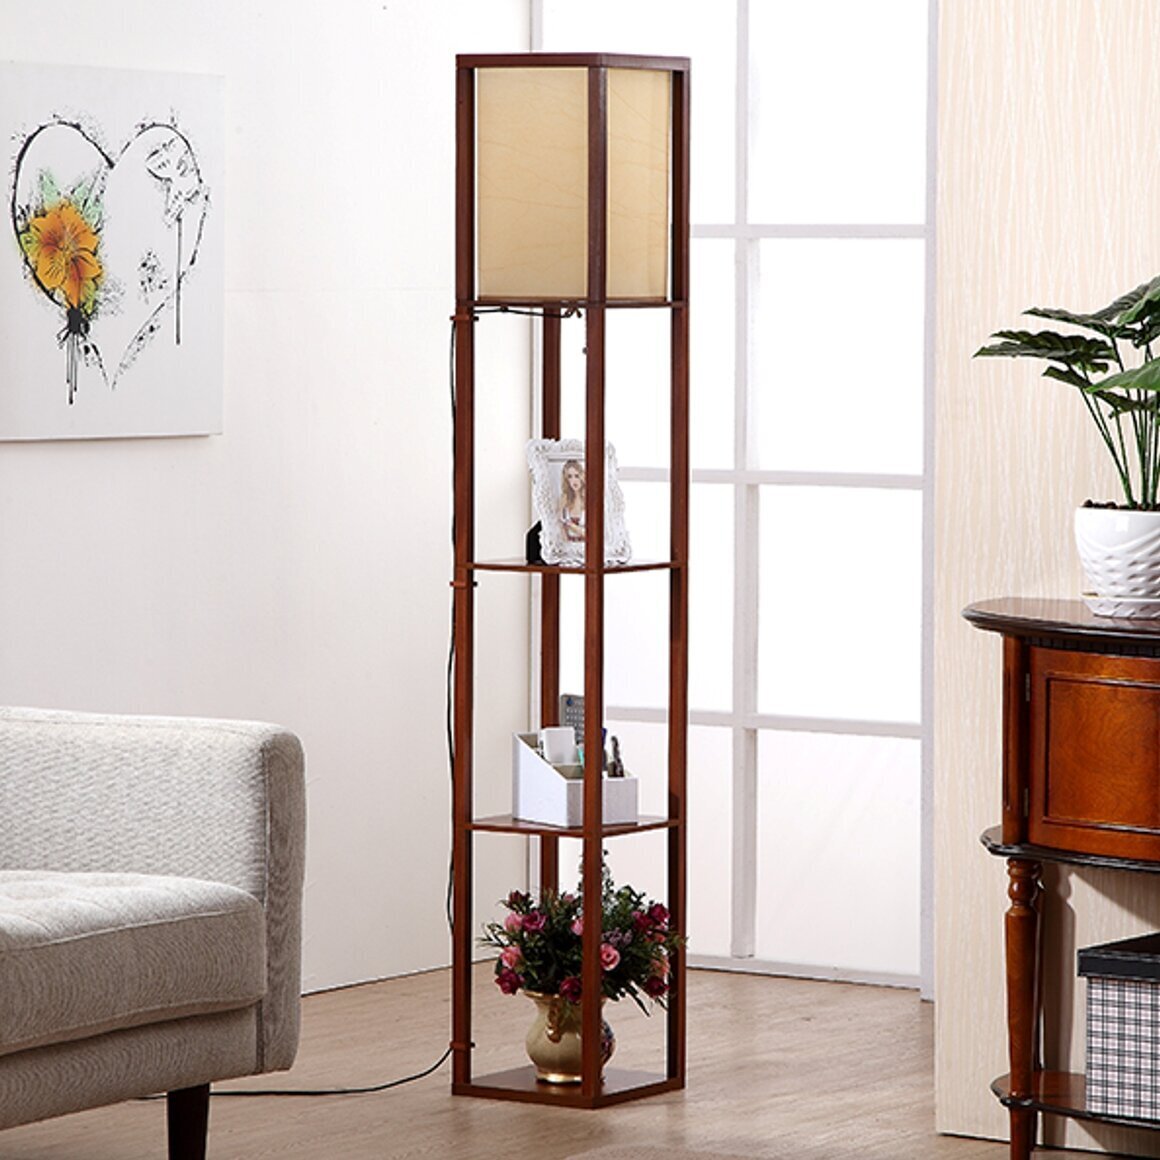 Wooden Floor Lamp with Shelves